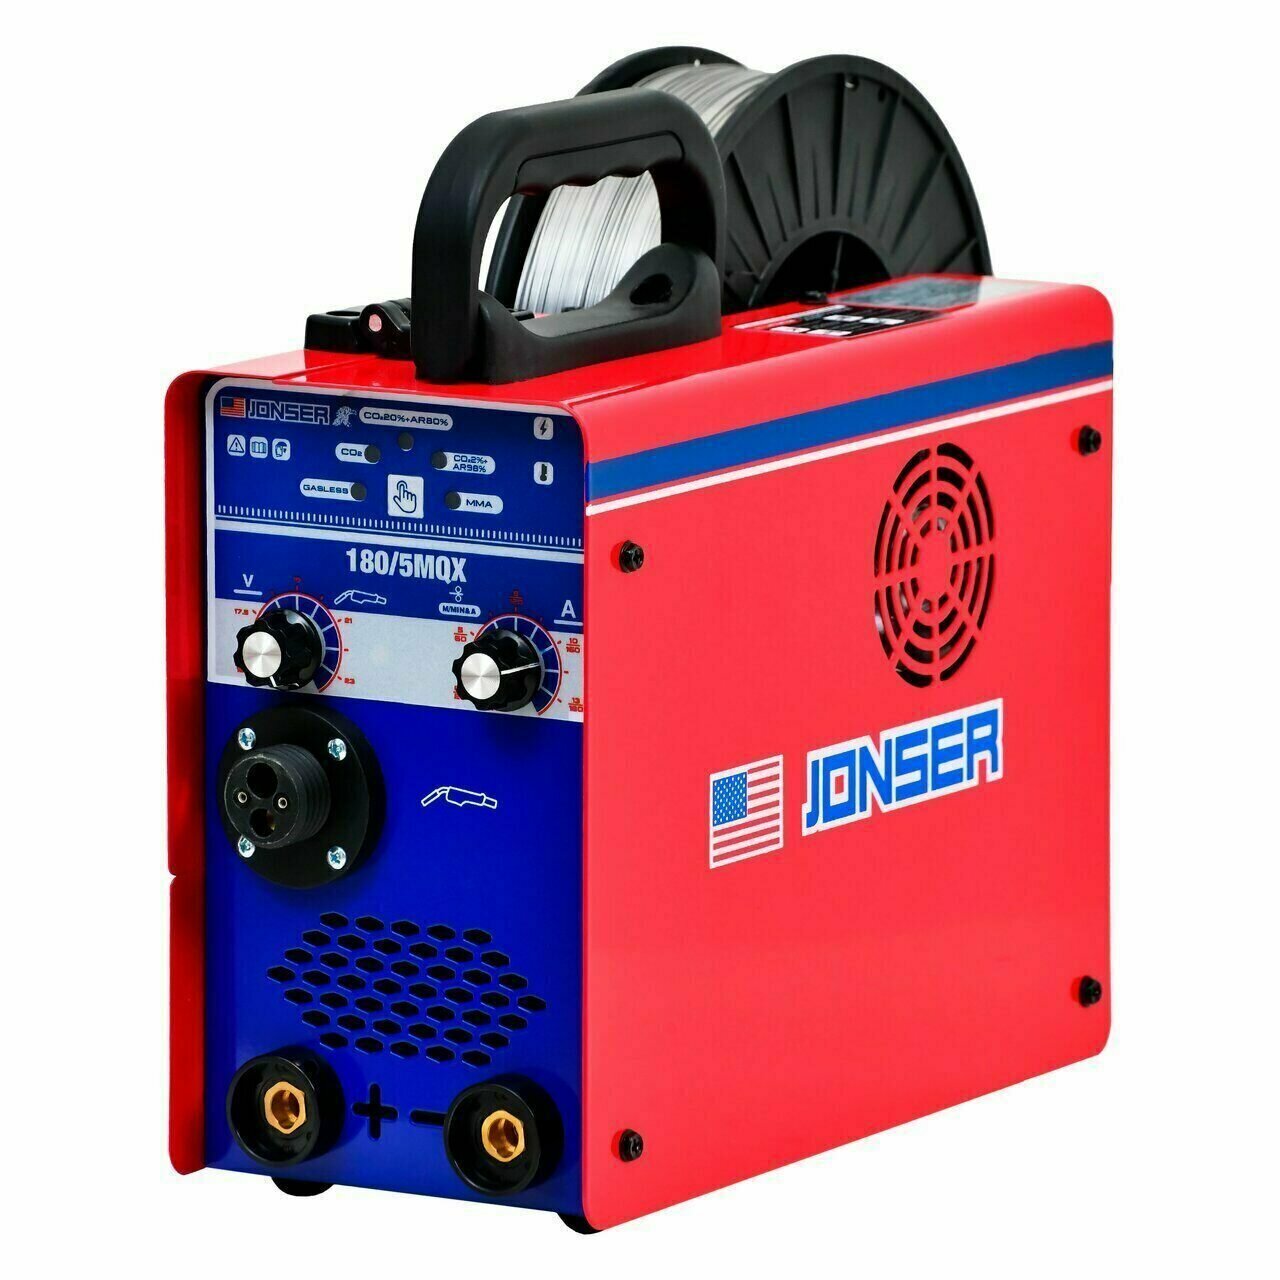 Сварочный аппарат полуавтомат инверторный Jonser 180/5MQX сварка без газа / с газом